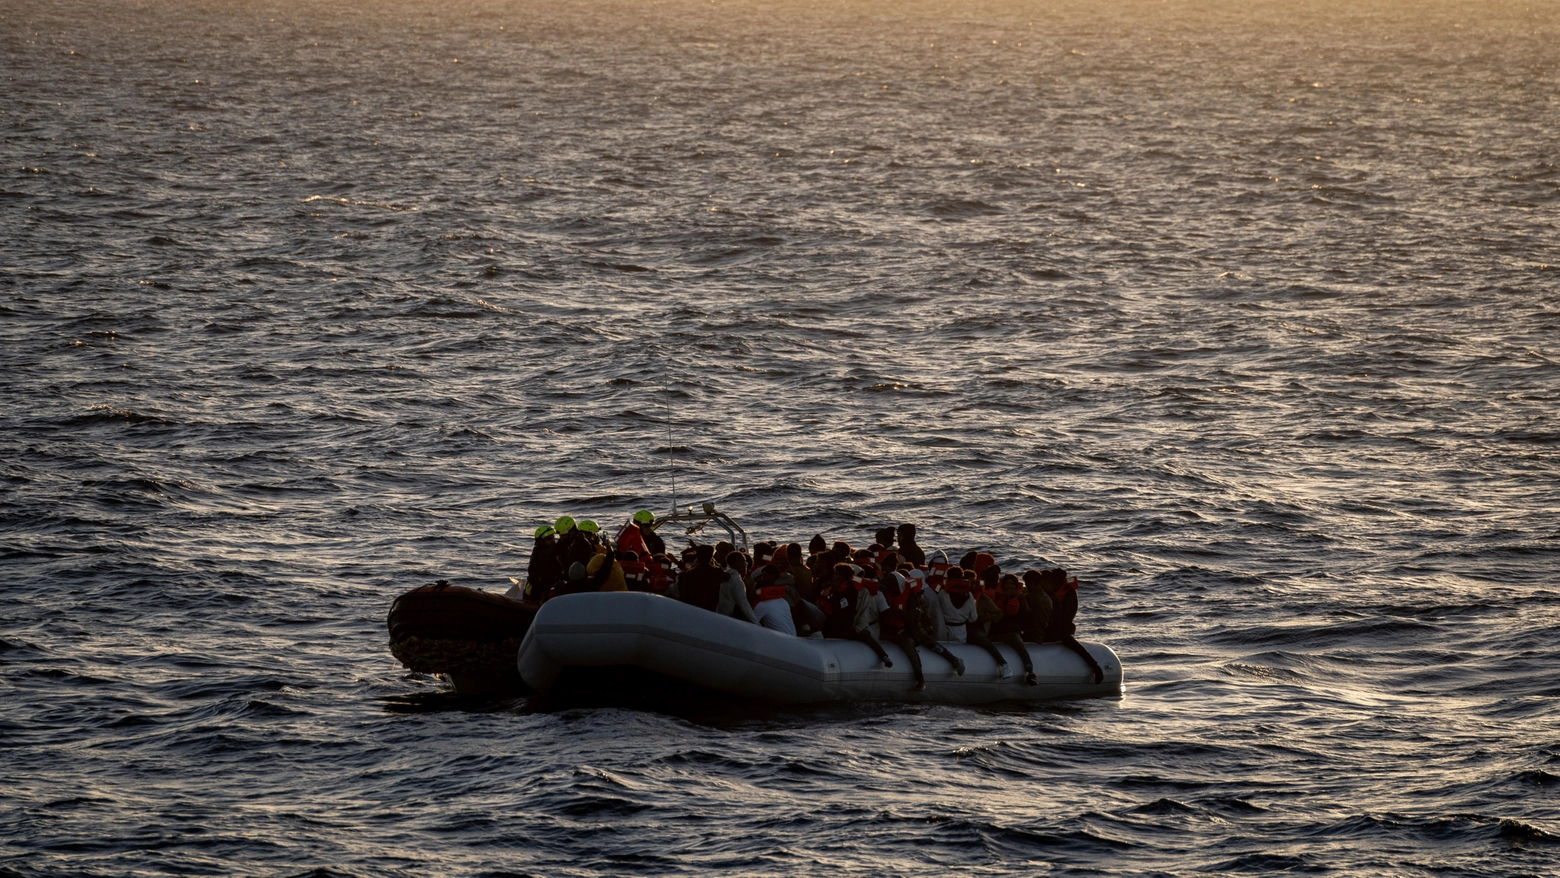 Un gommone di migranti soccorso a largo della Libia, foto di archivio